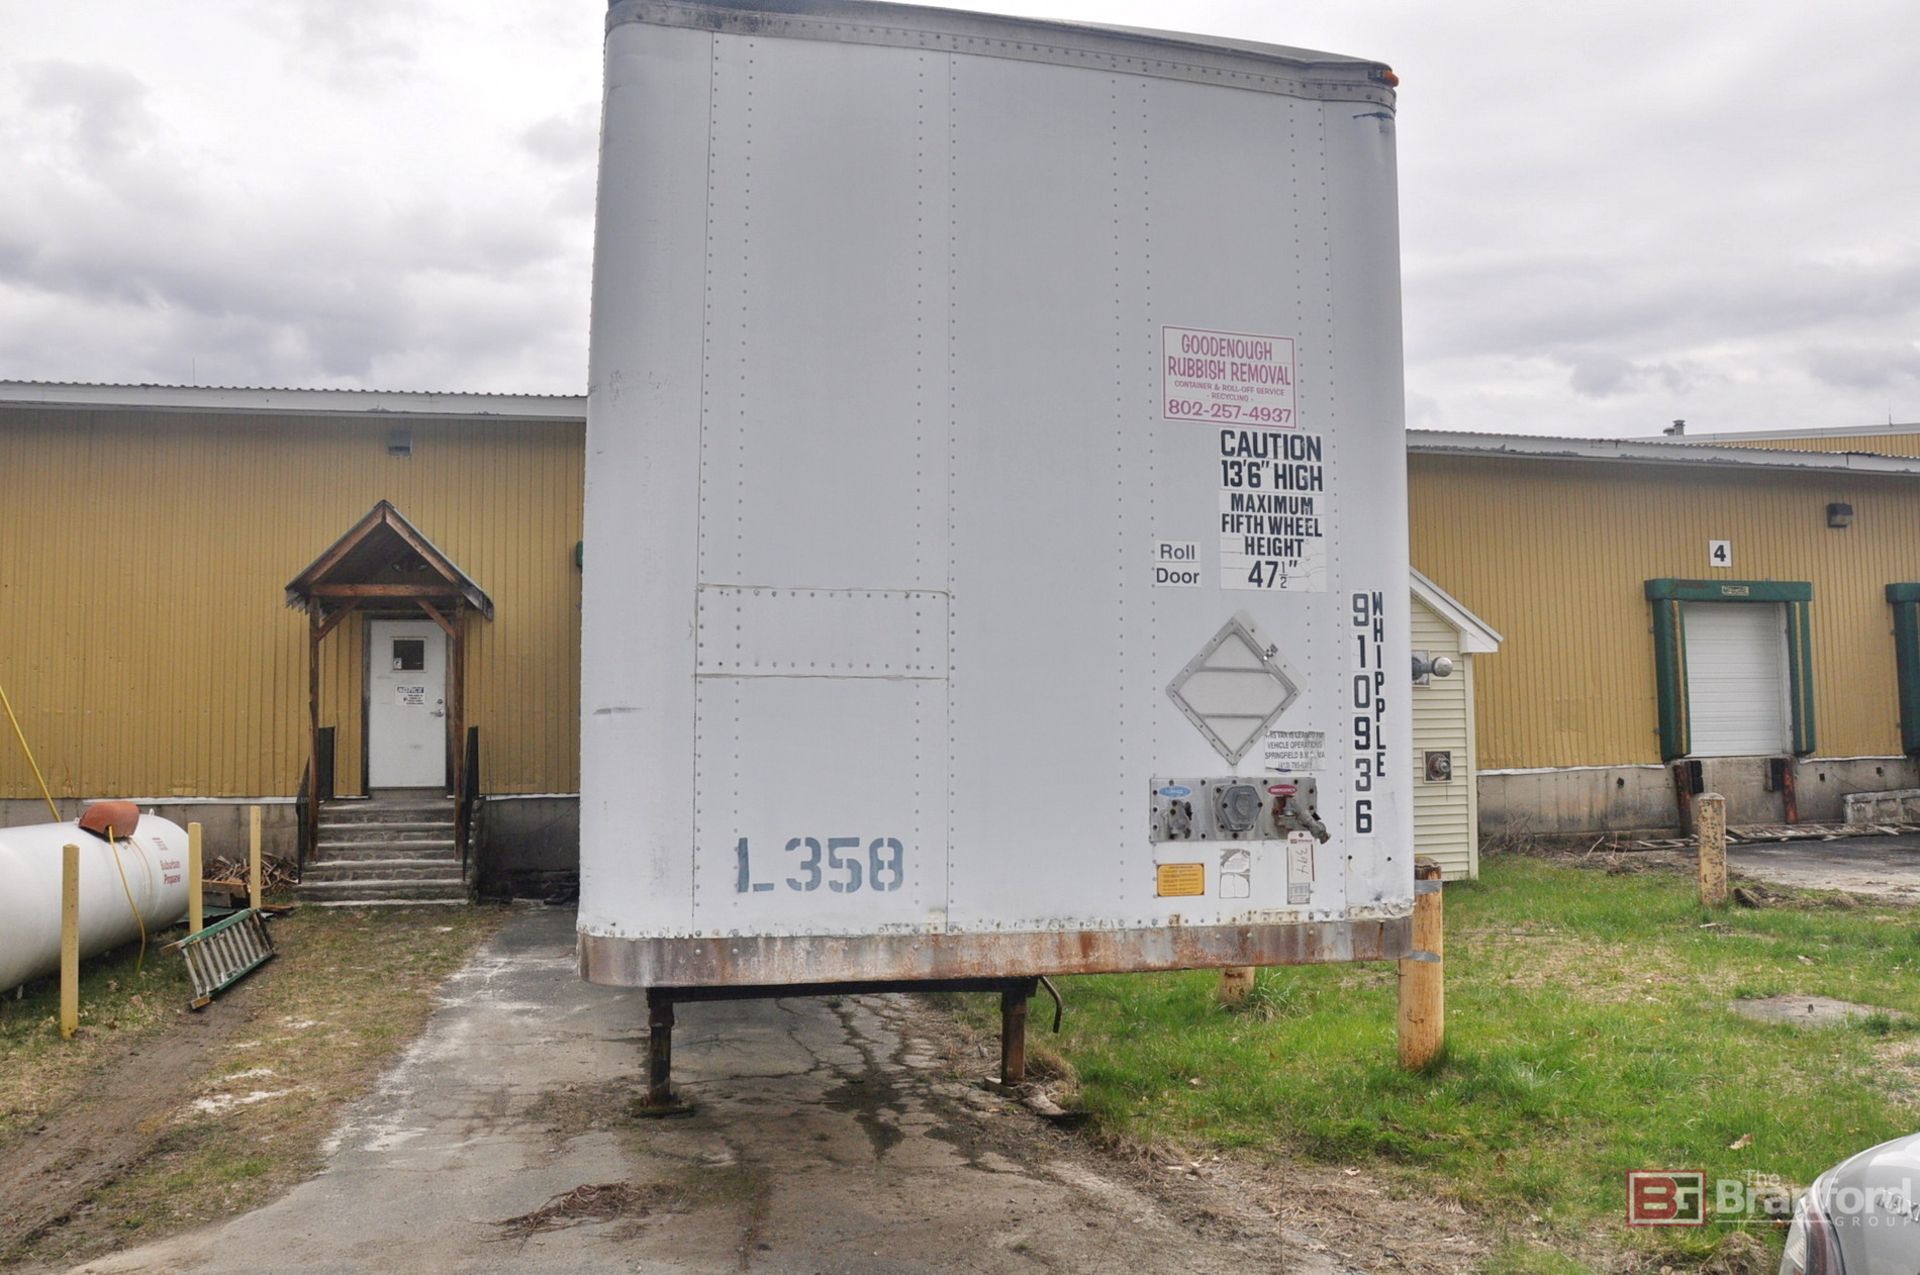 Storage trailer